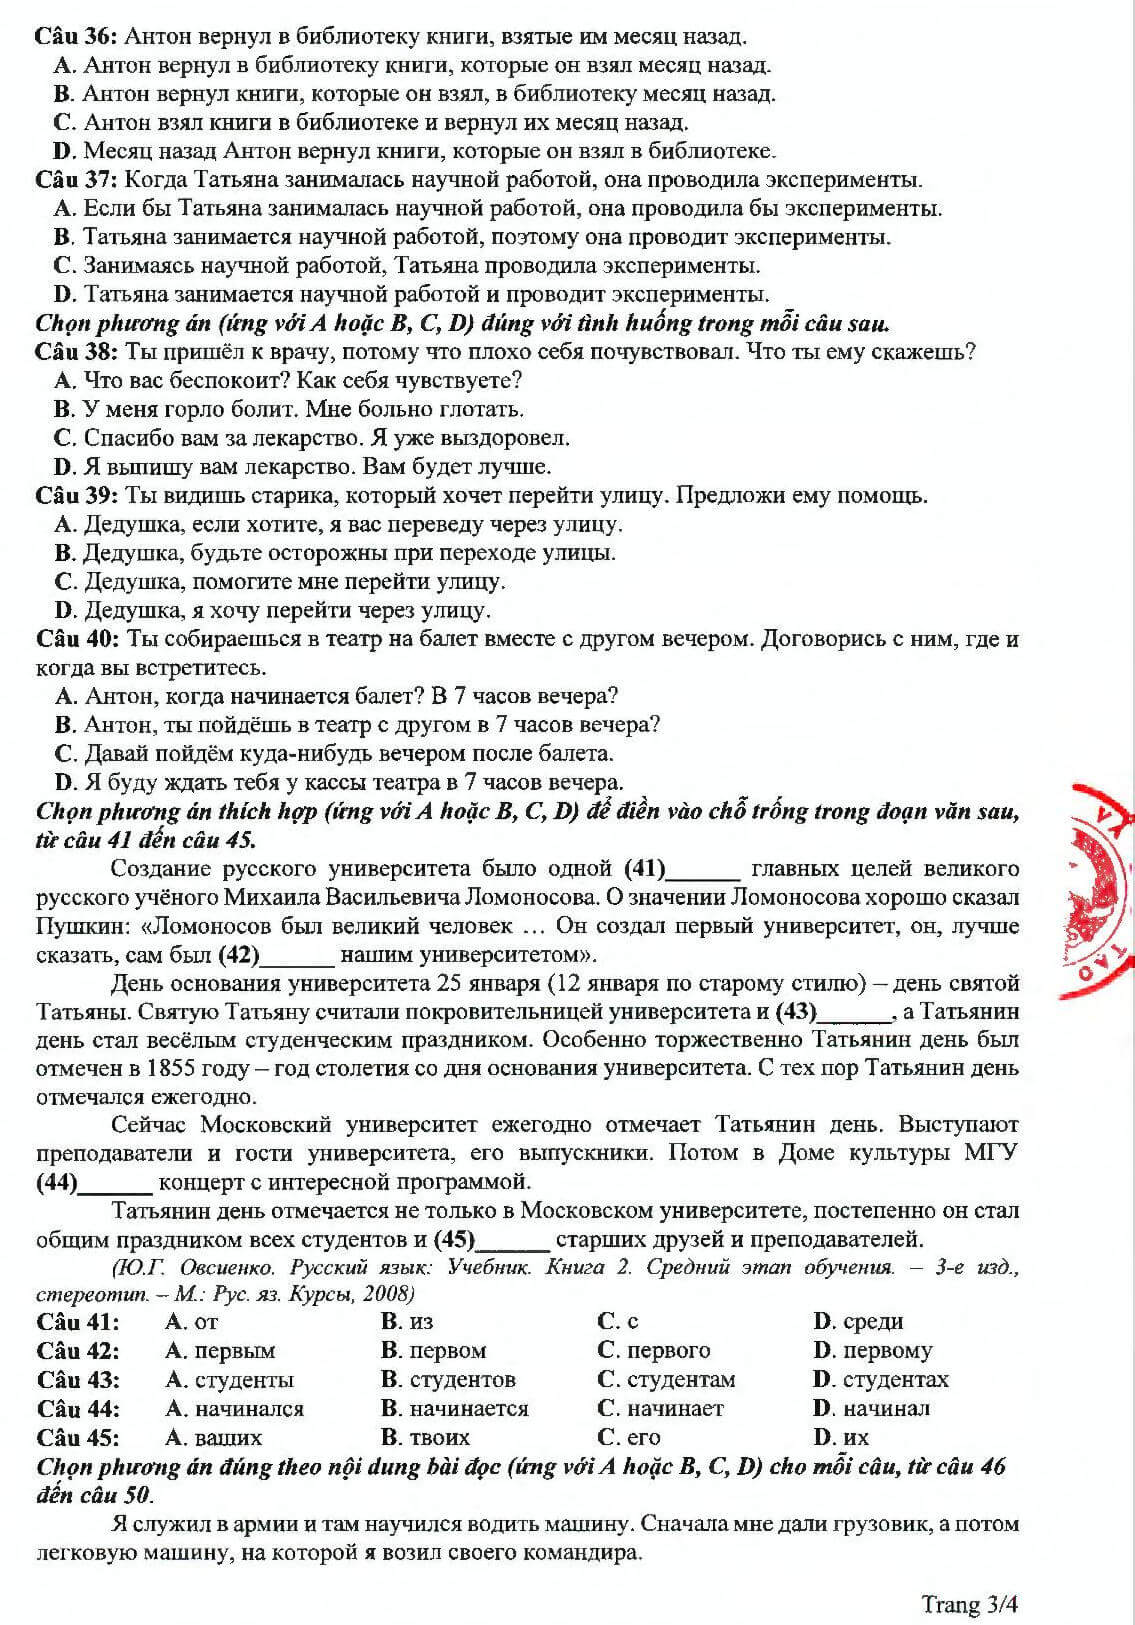 Đề thi tham khảo Tiếng Nga tốt nghiệp THPT 2020 p3